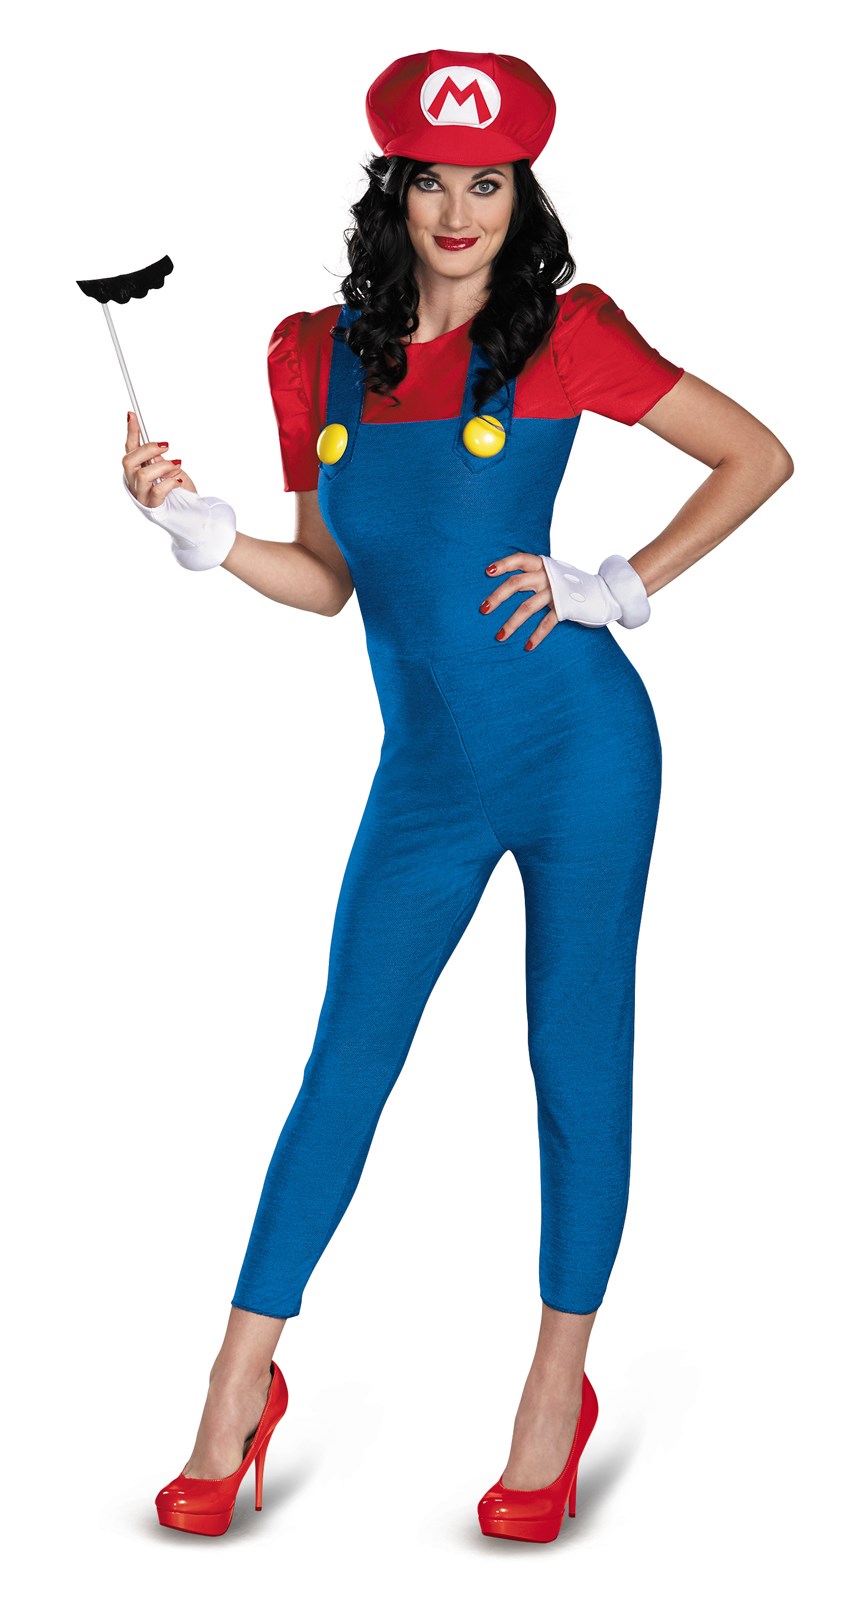 Super Mario Brothers – Deluxe Female Mario Costume